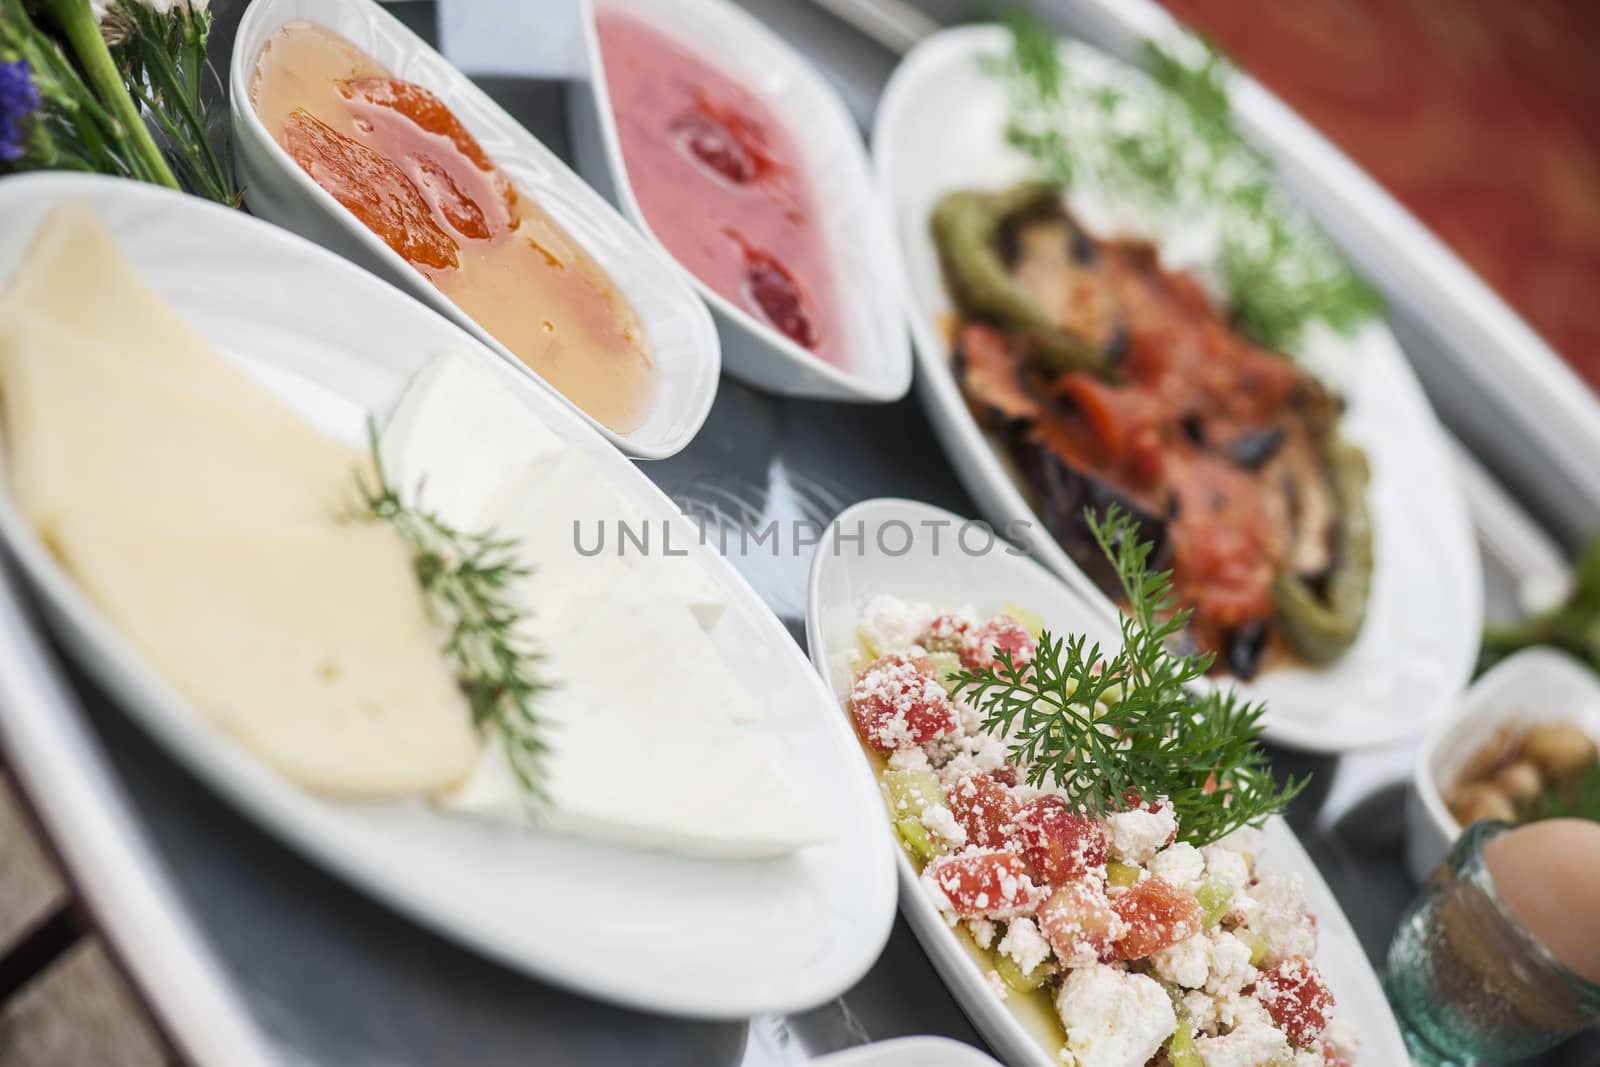 Turkish breakfast by emirkoo